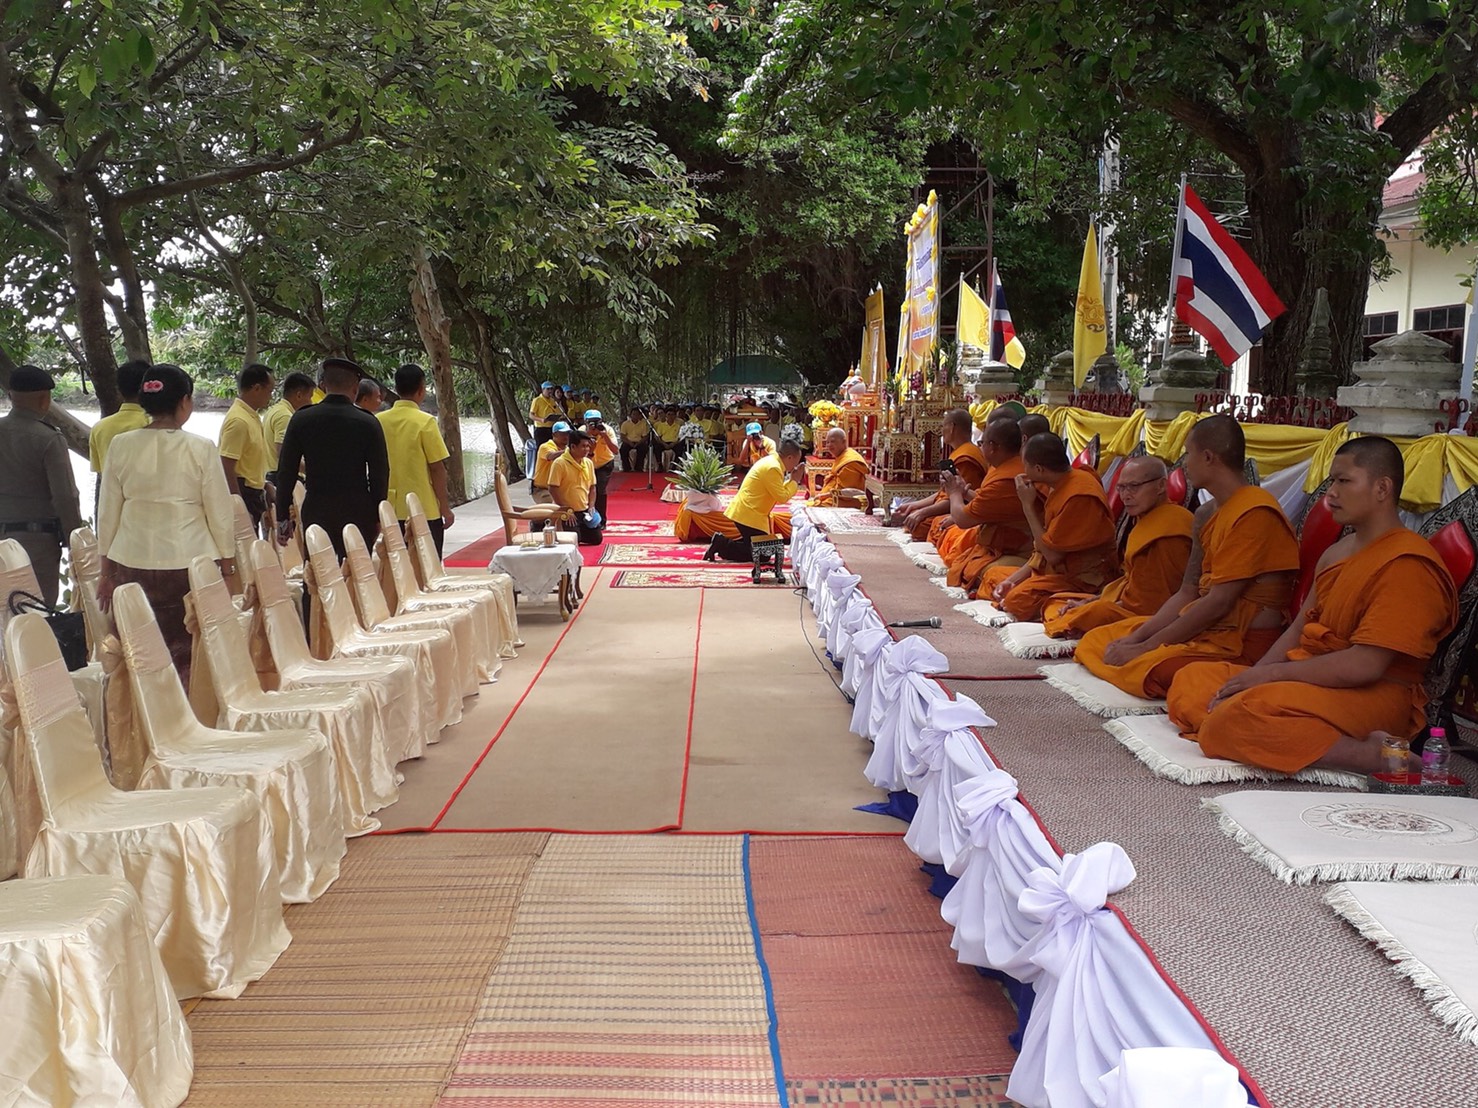 พิธีเปิด มีพิธีสงฆ์ แสดงถึงความศรัทธา ของพุทธศาสนากับชุมชนคนไทย